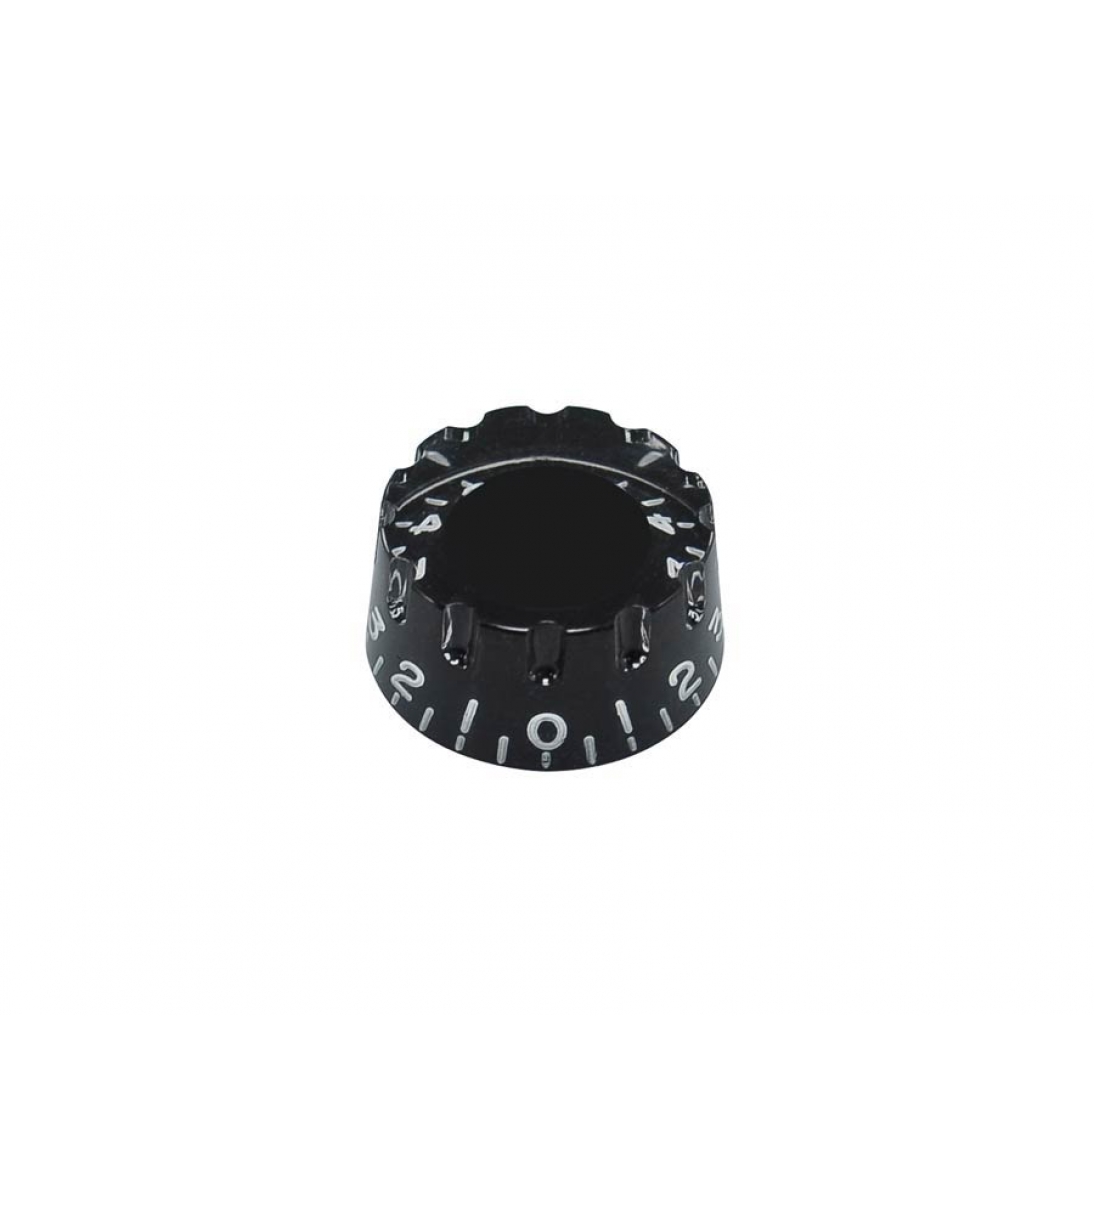 Manopola volume, modello con bordo dentellato, colore nero trasparente